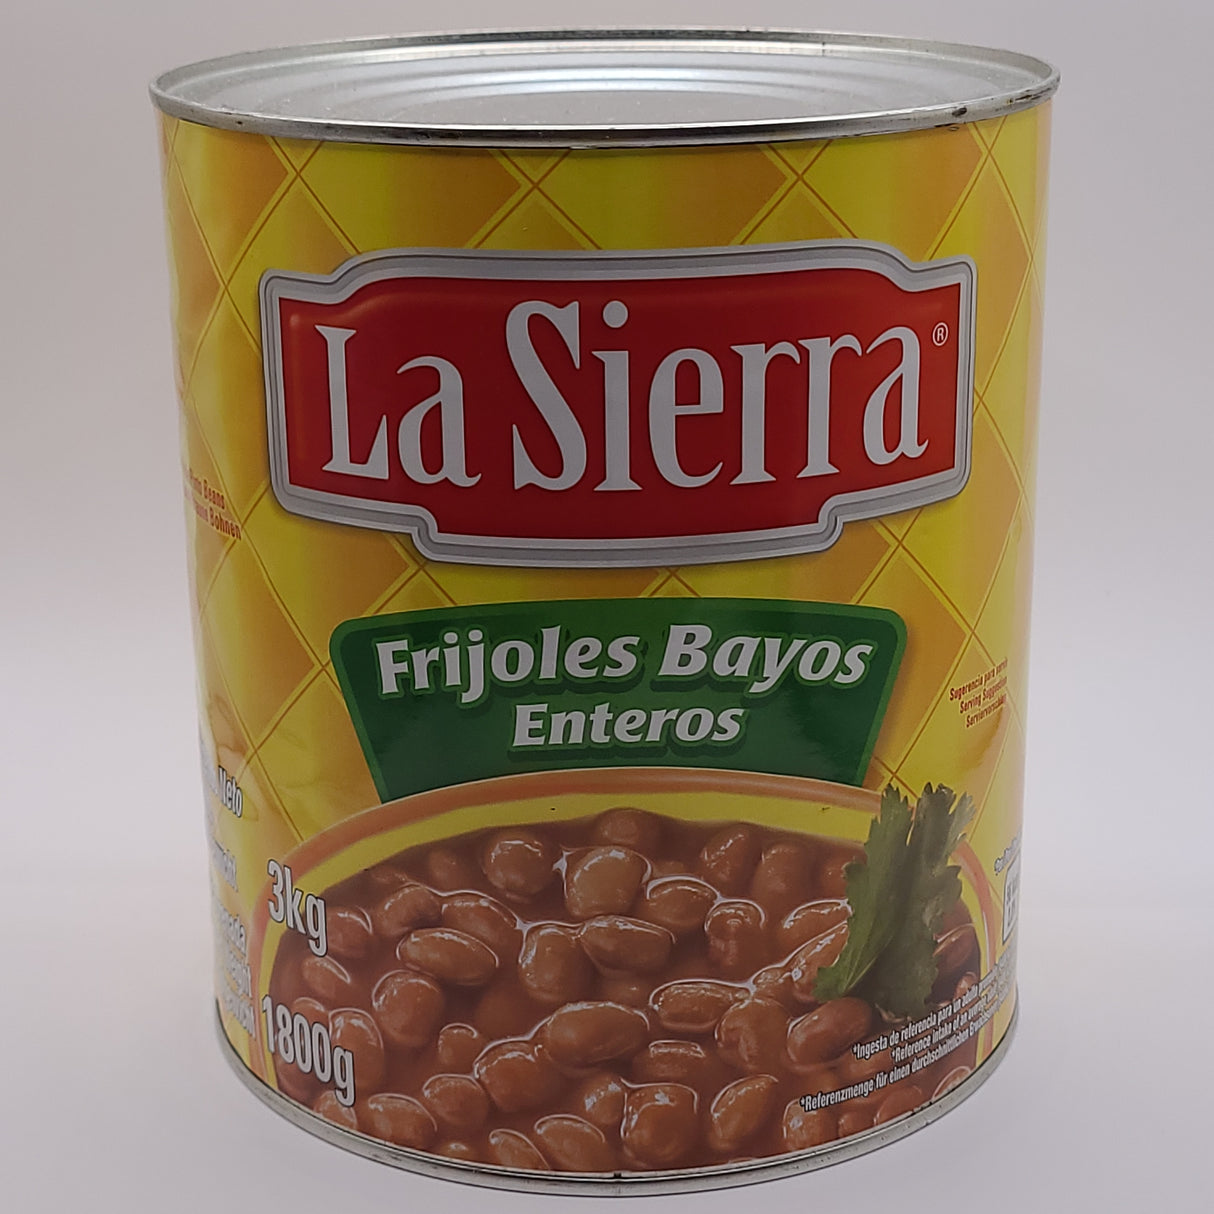 %%GRAN OFERTA % Frijoles Bayos Entero 3 Kg LA SIERRA (cad. 09.05.24)